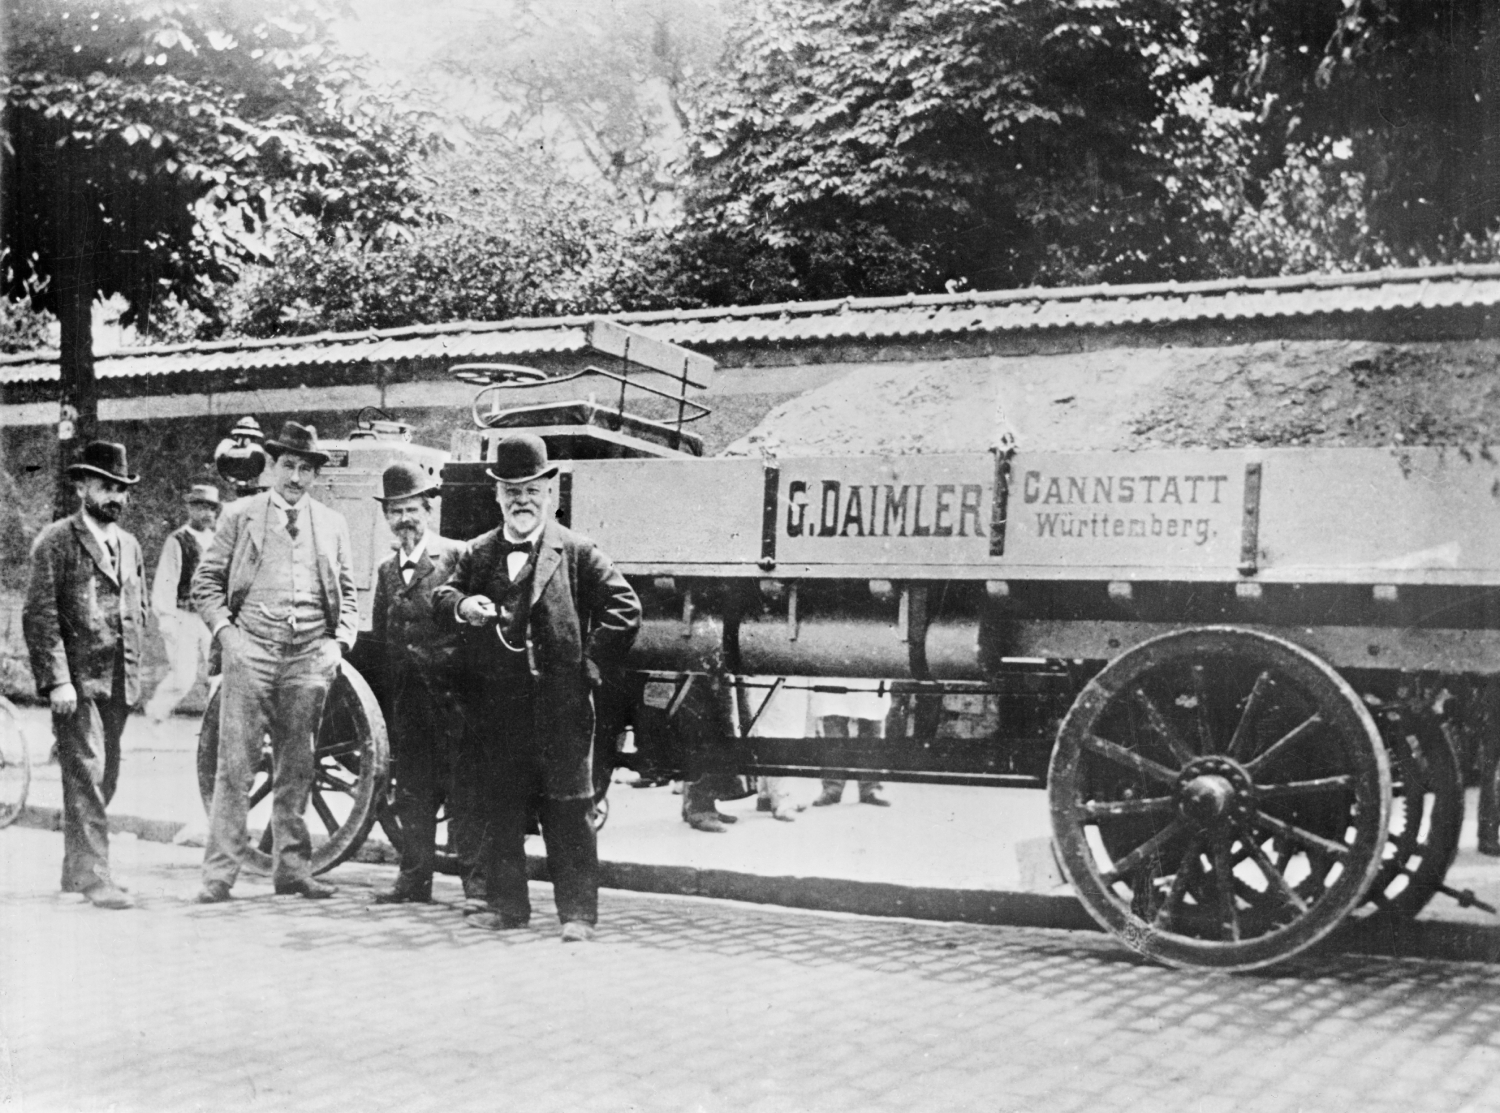 The first pickup truck ever made was the Daimler-Motoren-Gesellschaft Cannstatt by Gottlieb Daimler